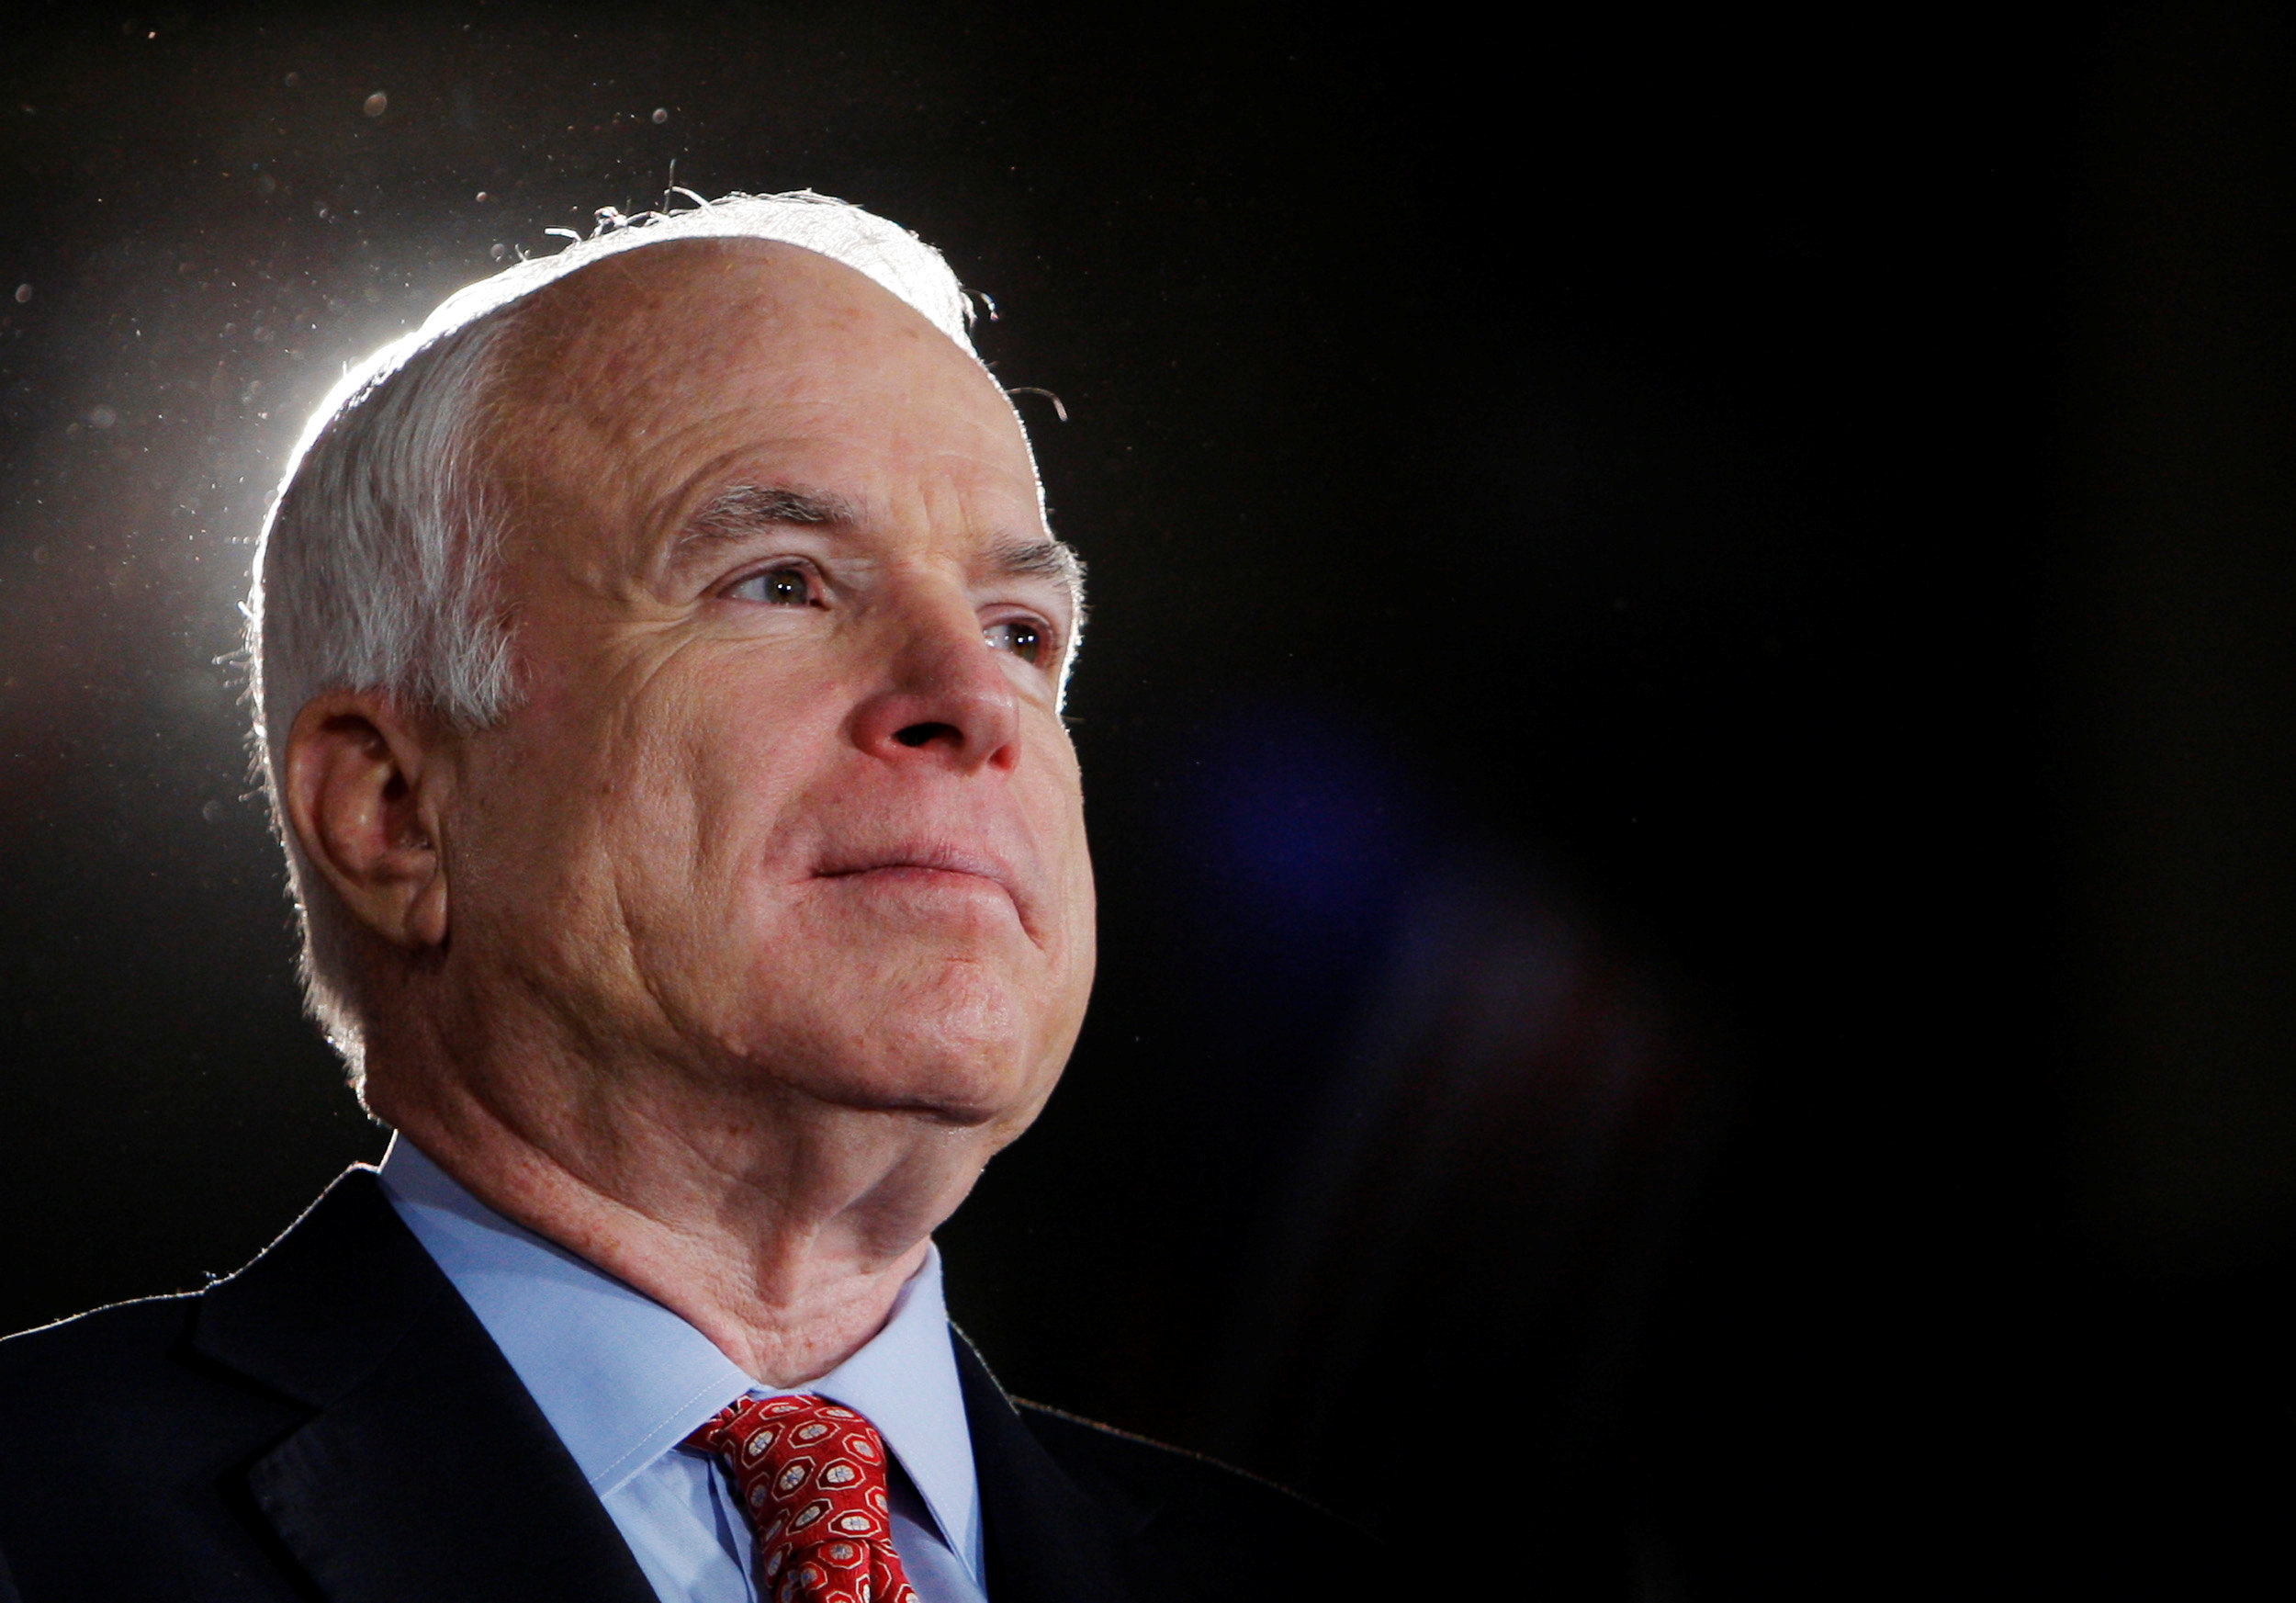 McCain, líder fiel a ideales que le enfrentaron a su propio partido